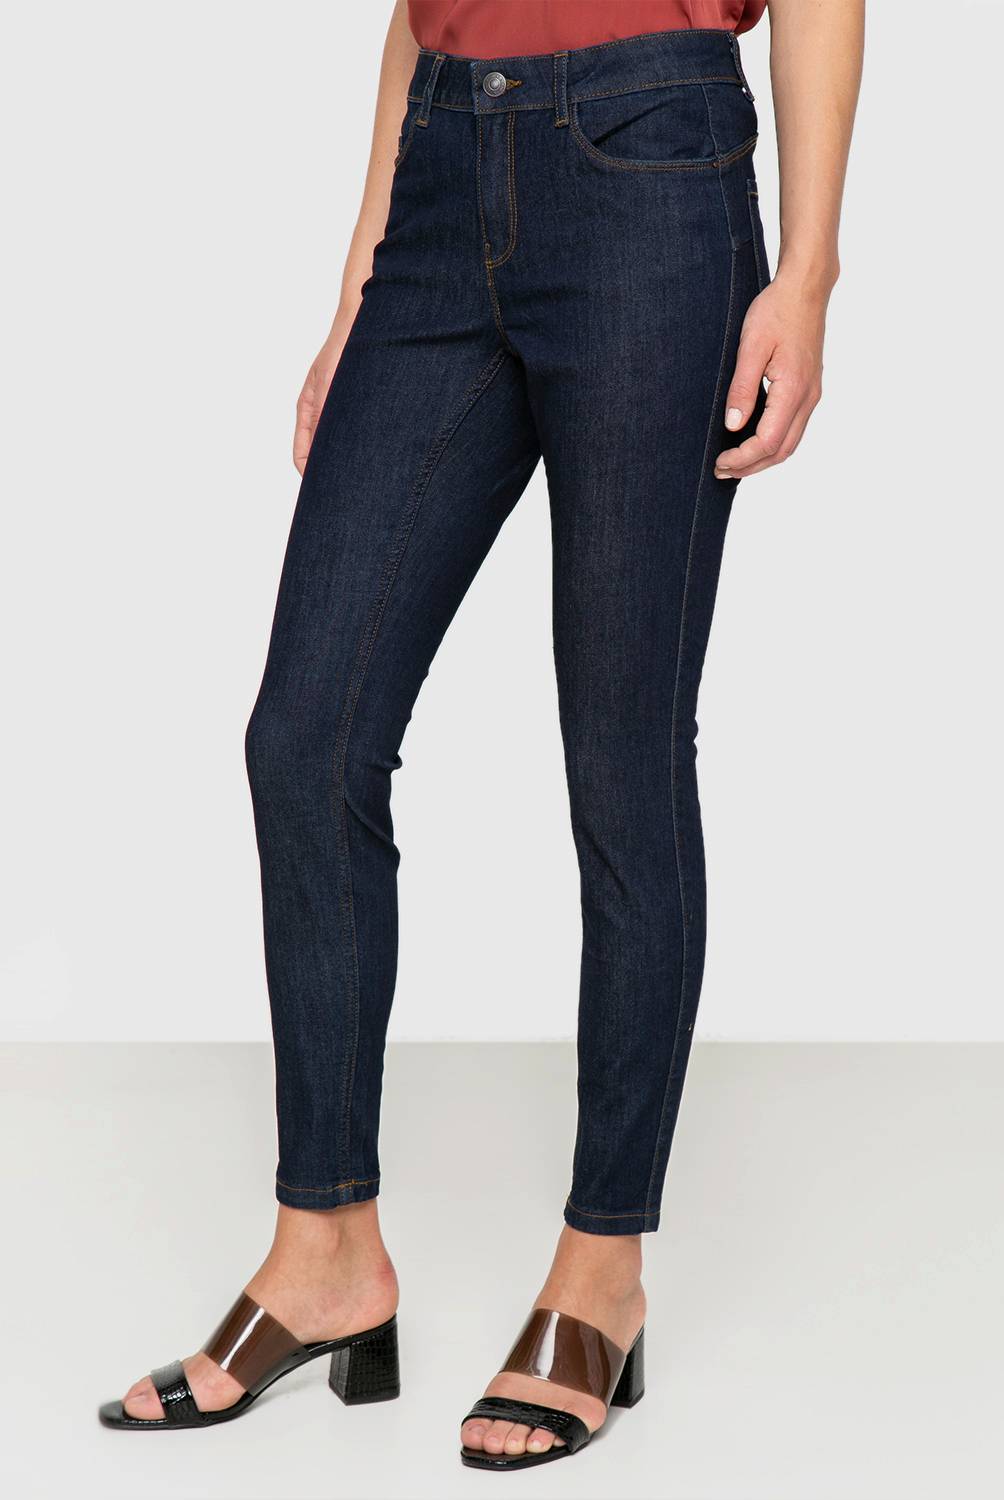 VERO MODA - Vero Moda Jeans Skinny Algodón Mujer